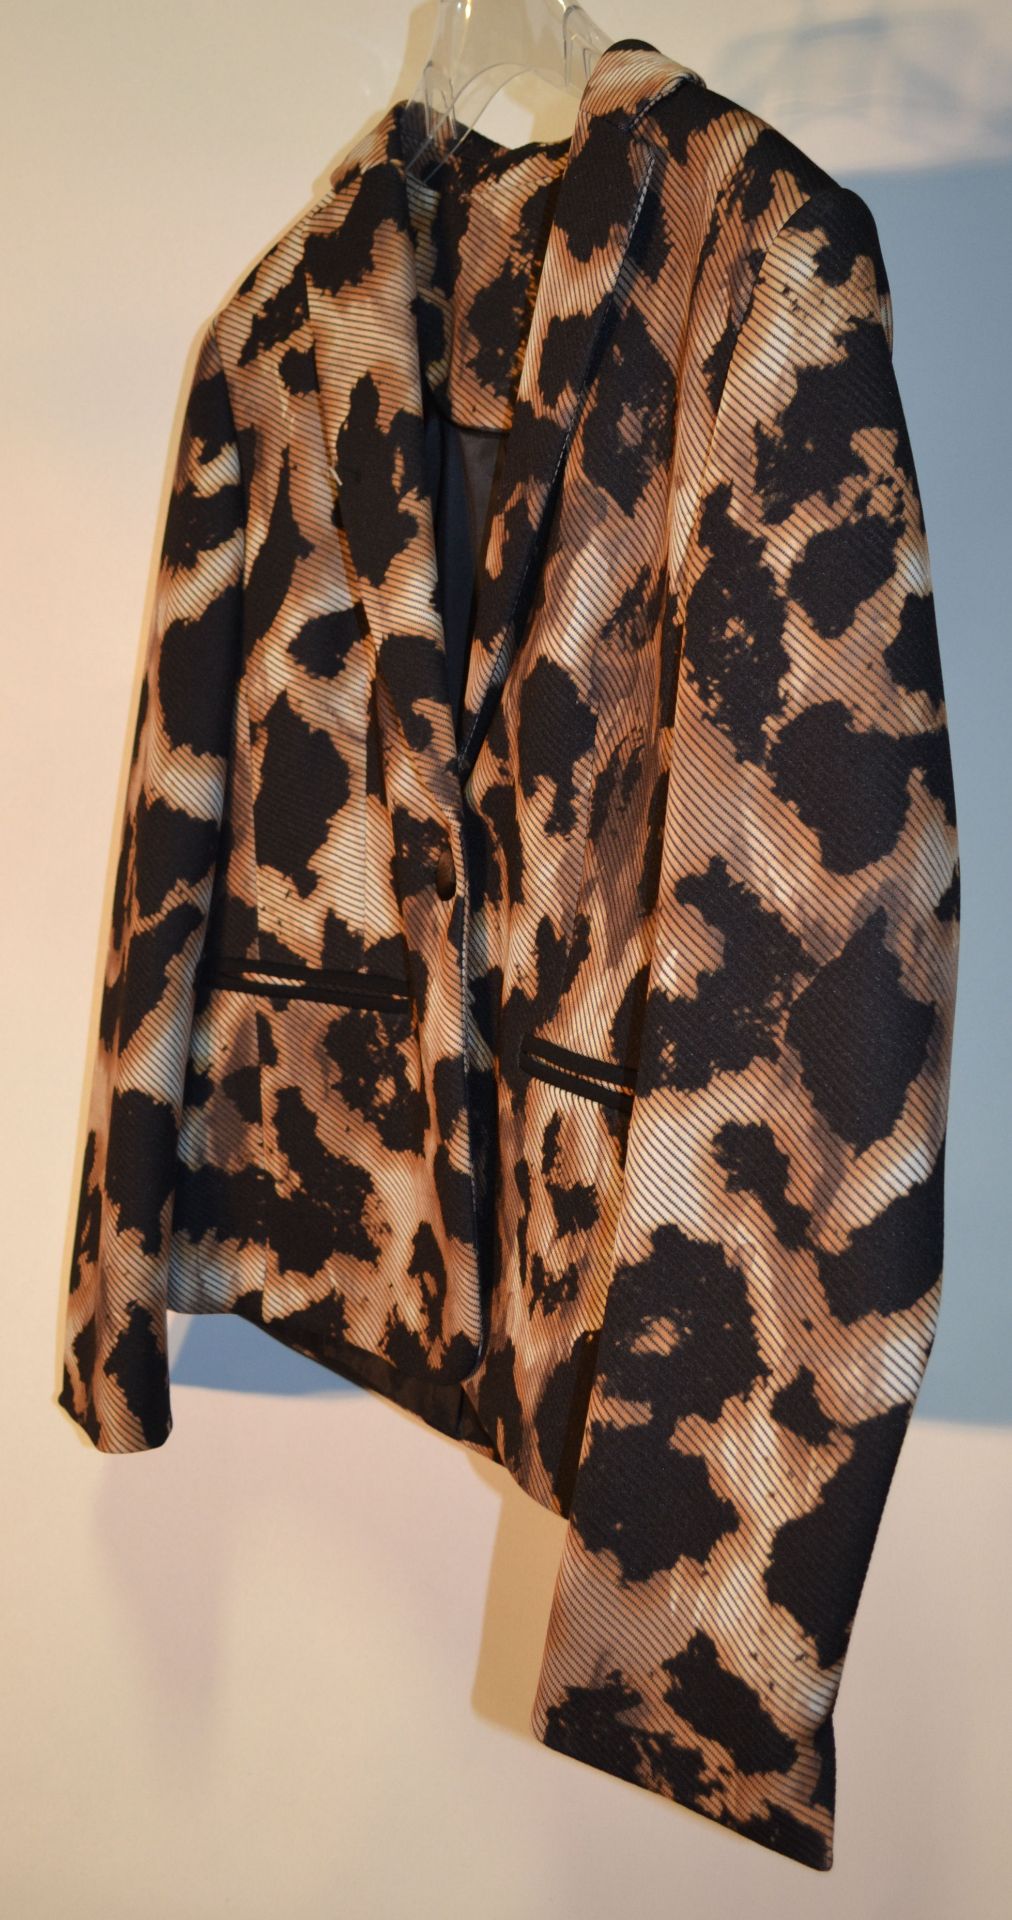 1 x Steilmann Kirsten Animal Print Womens Coat / Jacket - CL210 - Ref SC2011 - Location: Altrincham - Bild 2 aus 9